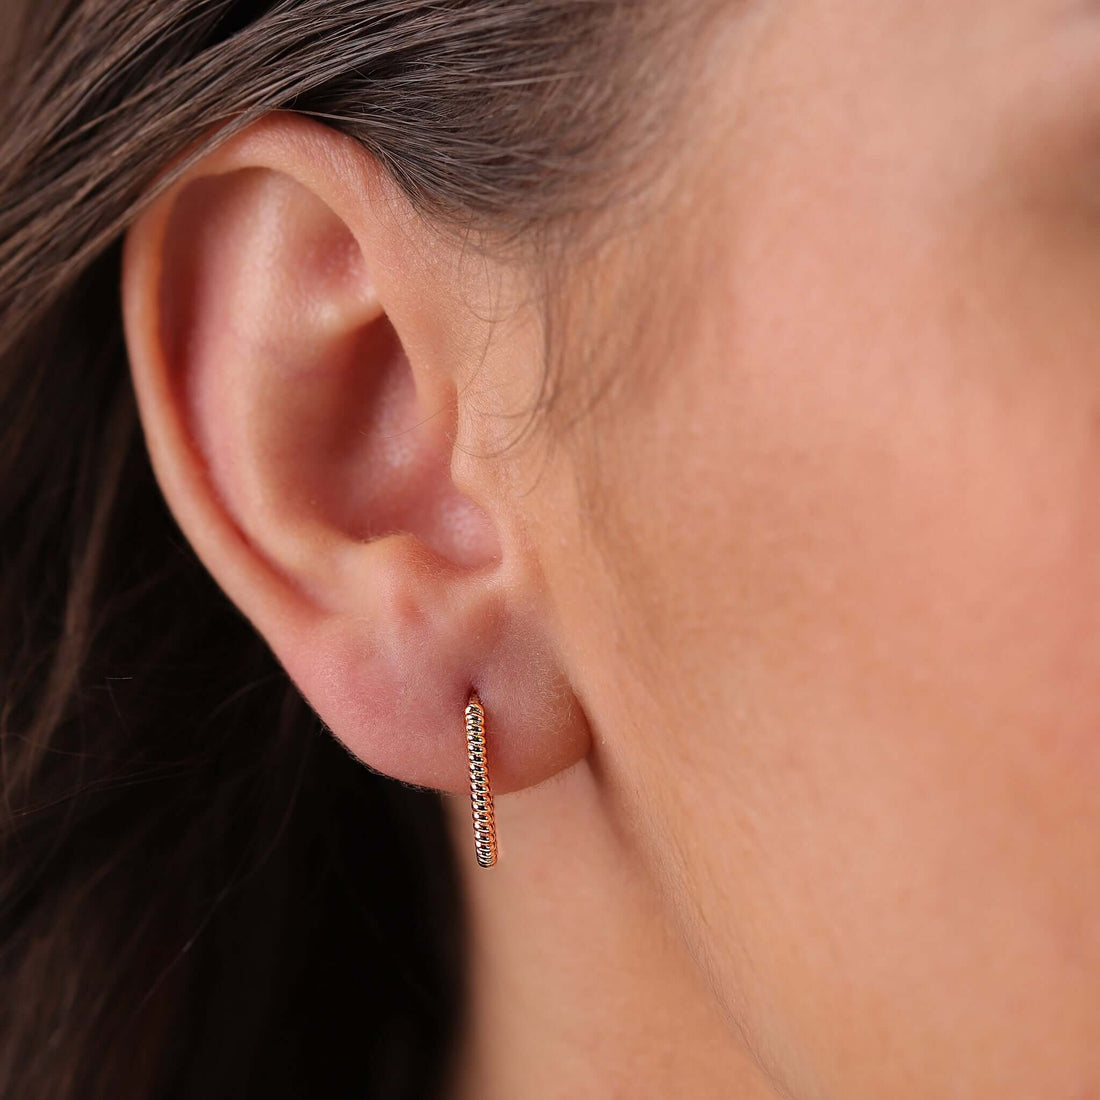 Jewelry Twist Hoops | Small Gold Earrings | 14K - Rose / Pair - Diamond earrings Zengoda Shop online from Artisan